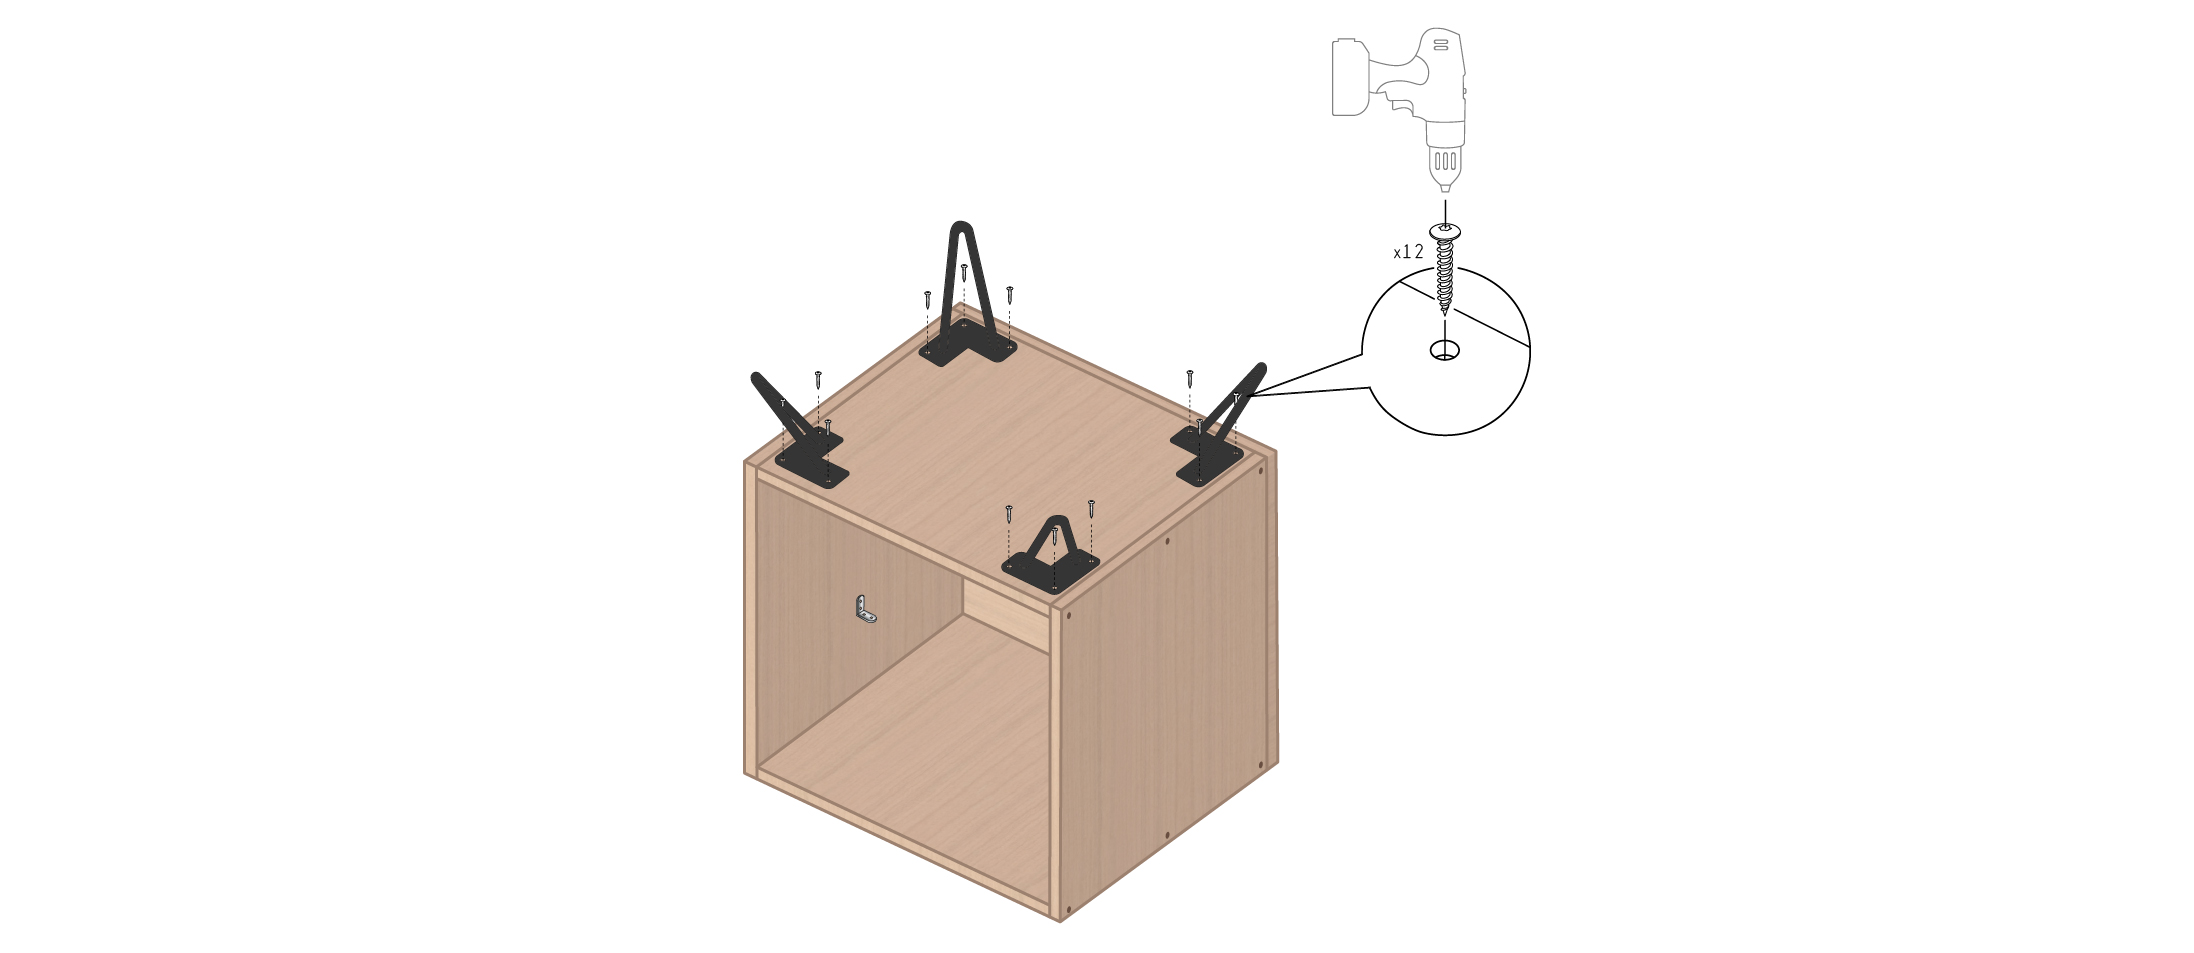 Meuble vinyle DIY : fabriquer un meuble vinyle en 8 étapes